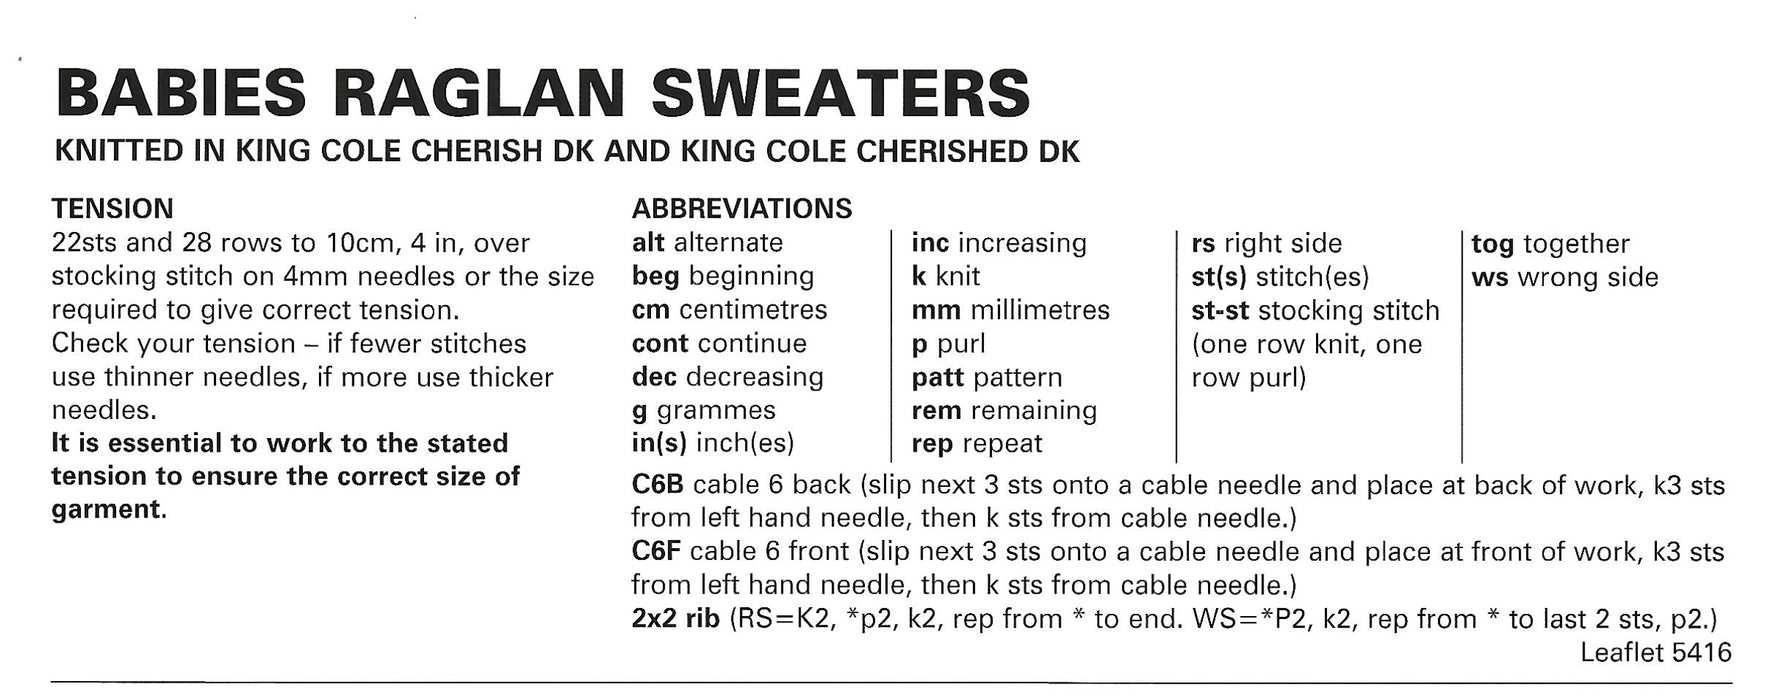 King Cole 5416 Double Knitting Pattern - DK Baby Raglan Sweaters